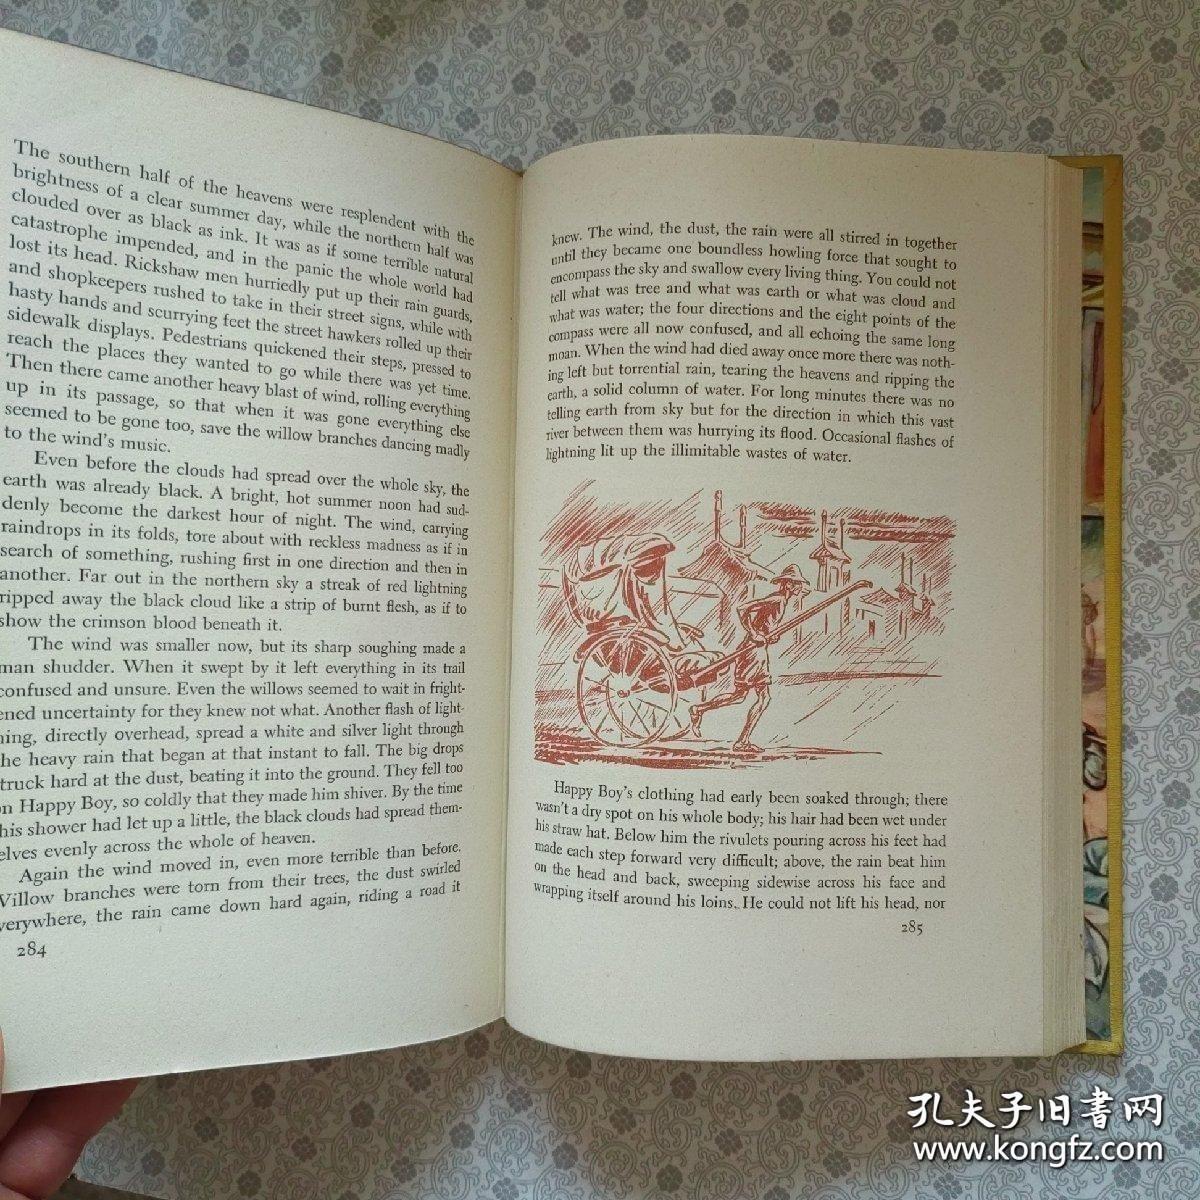 1945年原版老舍名作骆驼祥子（也叫洋车夫），海外插图版，珍贵书籍。